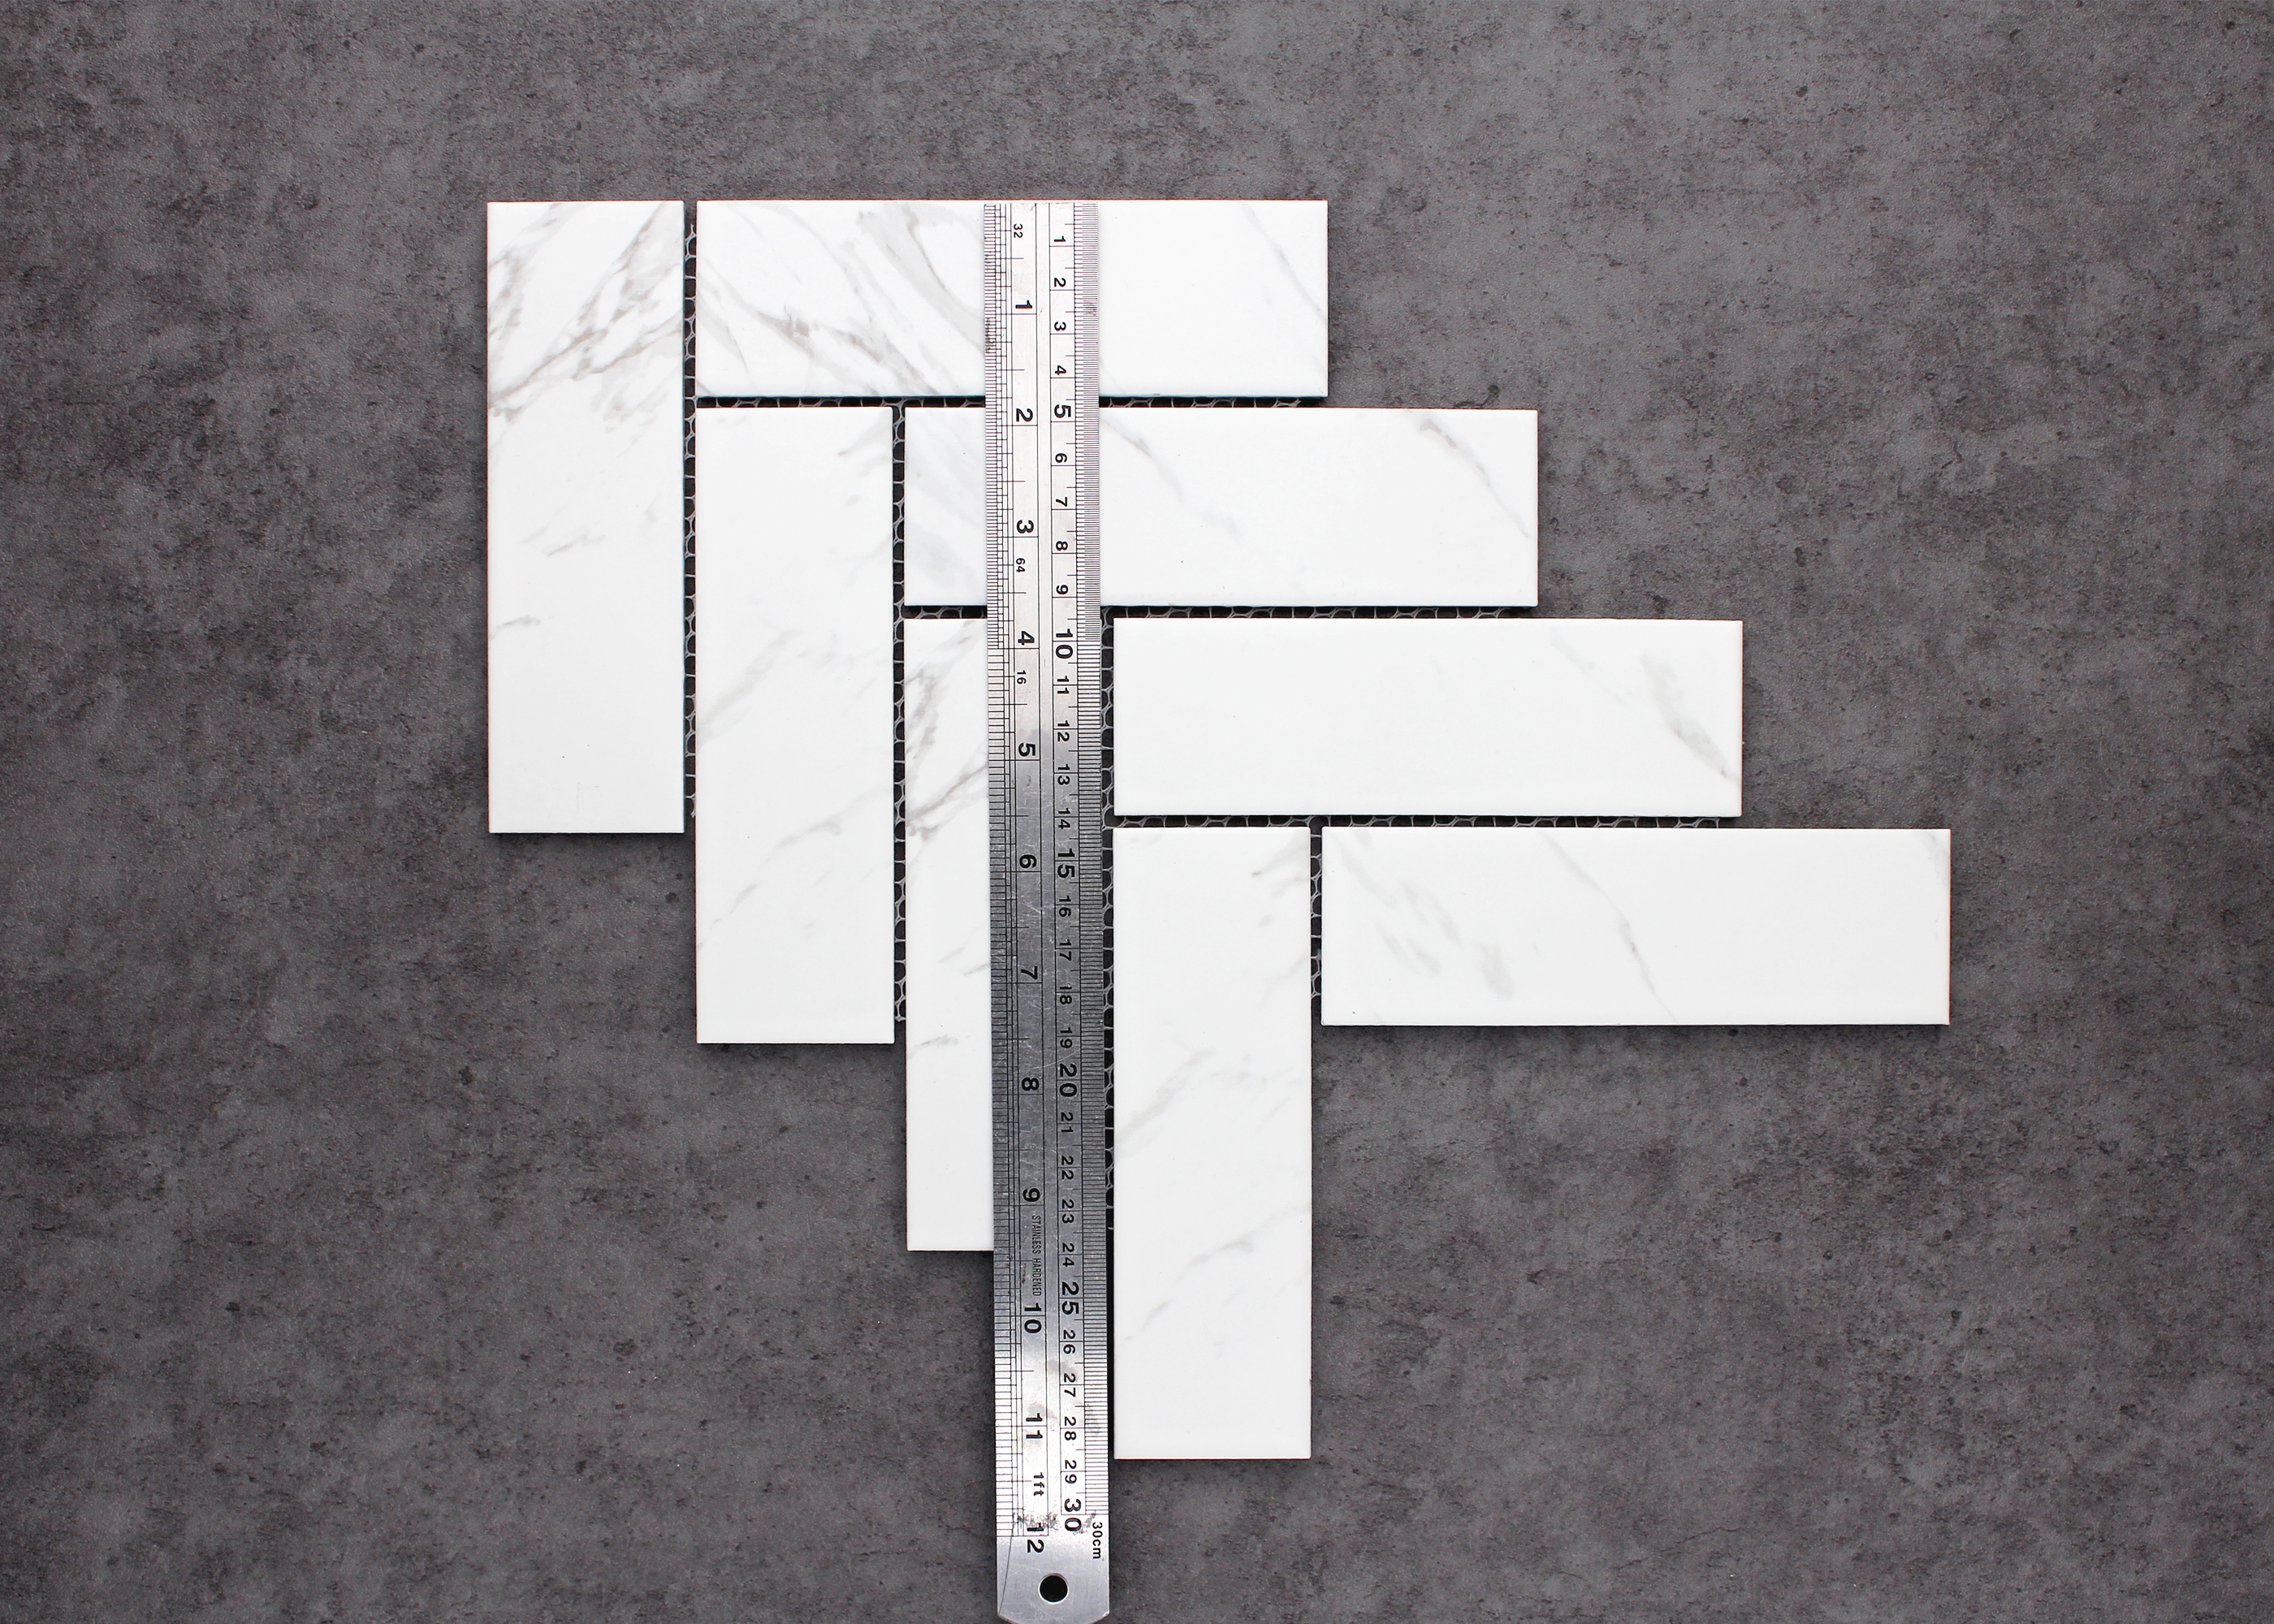 Carrara Matt Large Herringbone-CARRARA-Mosaic Mode